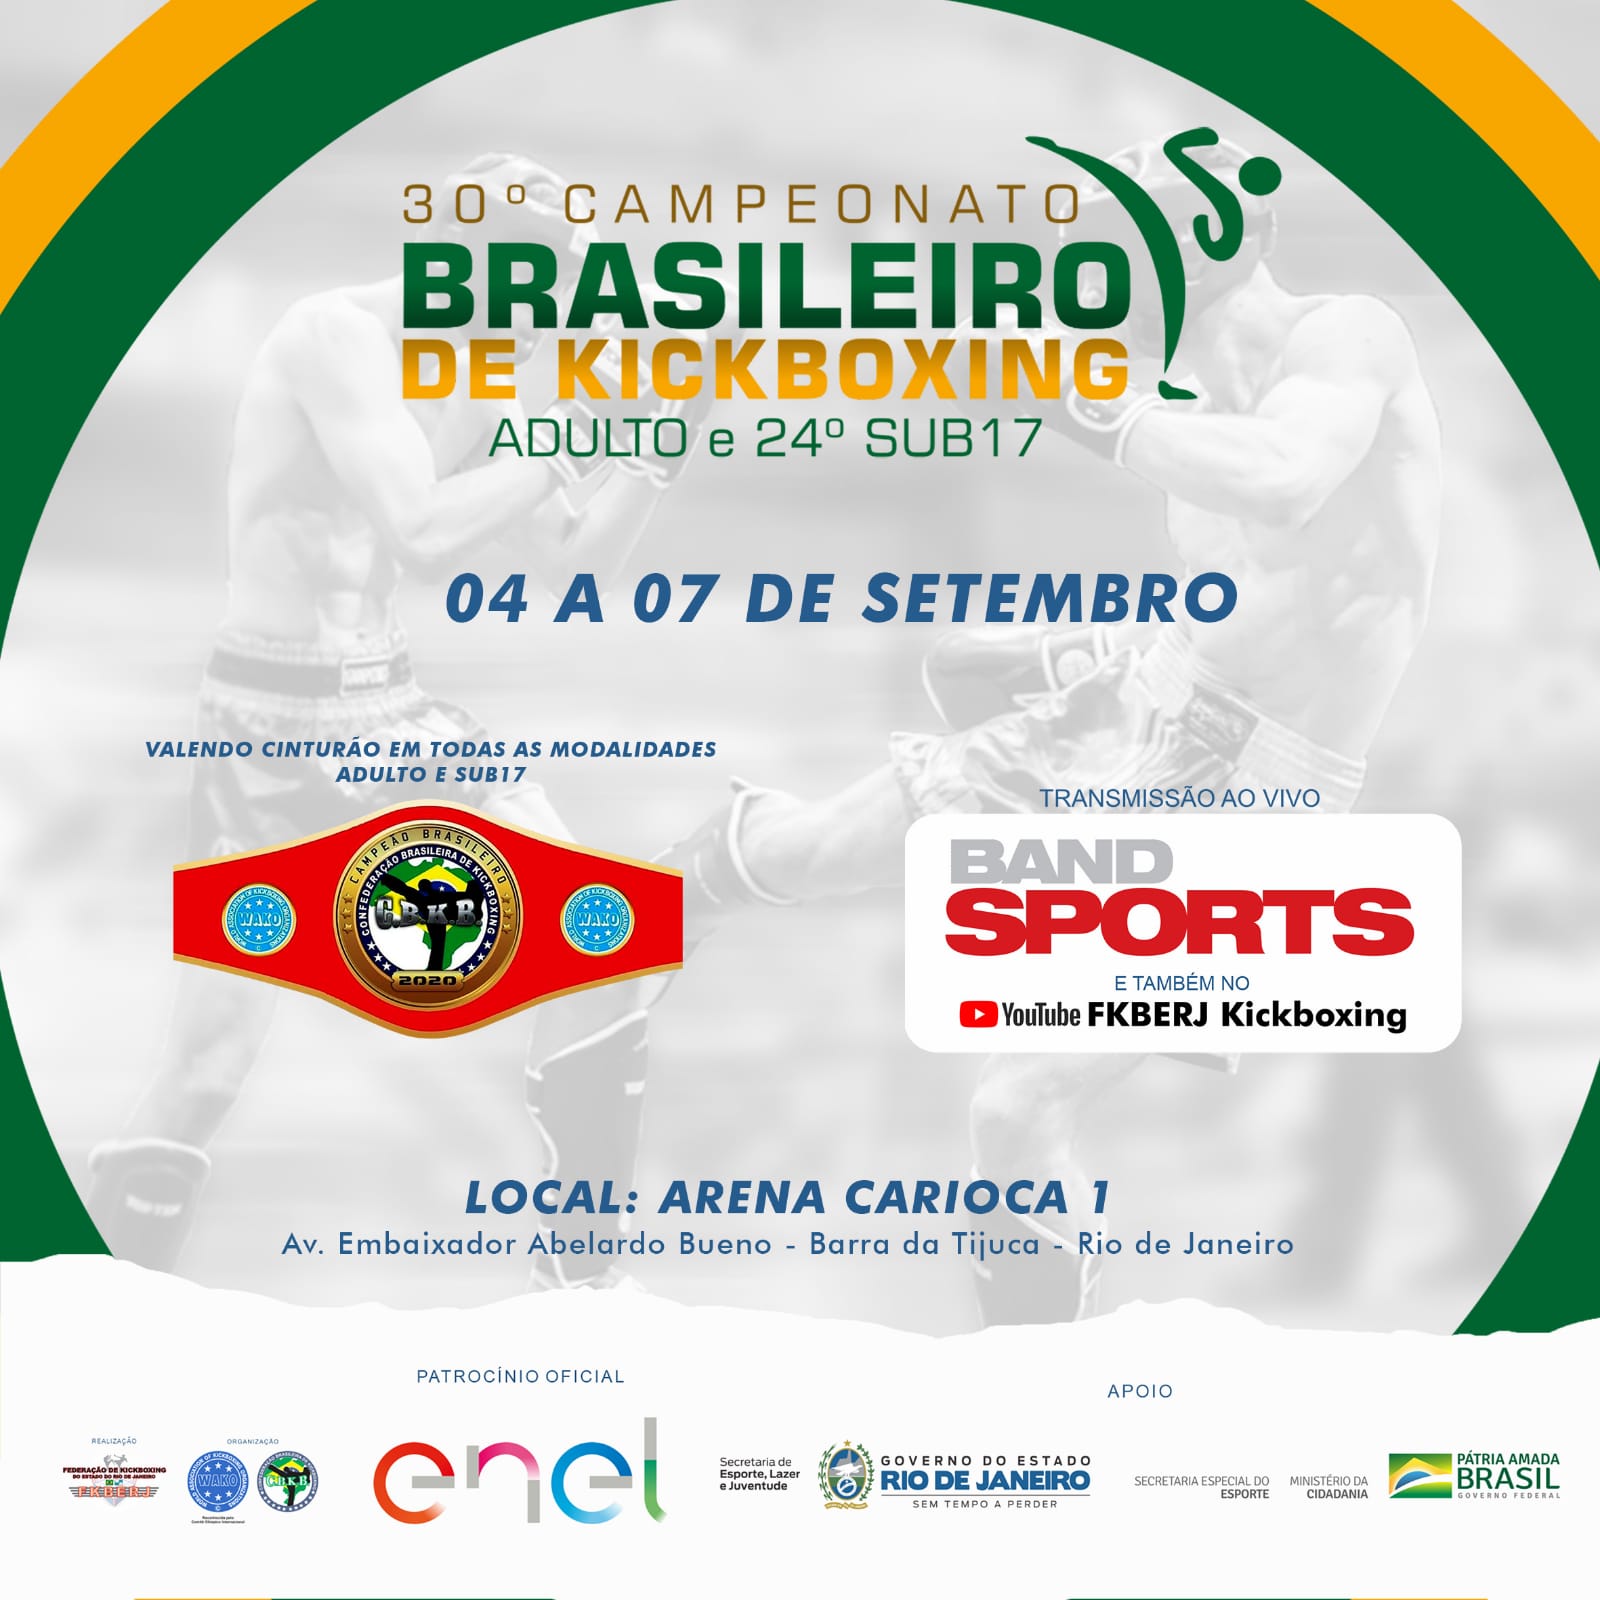 Camp. Brasileiro de KB será realizada no RJ graças ao patrocínio da Enel e do do Governo do Estado